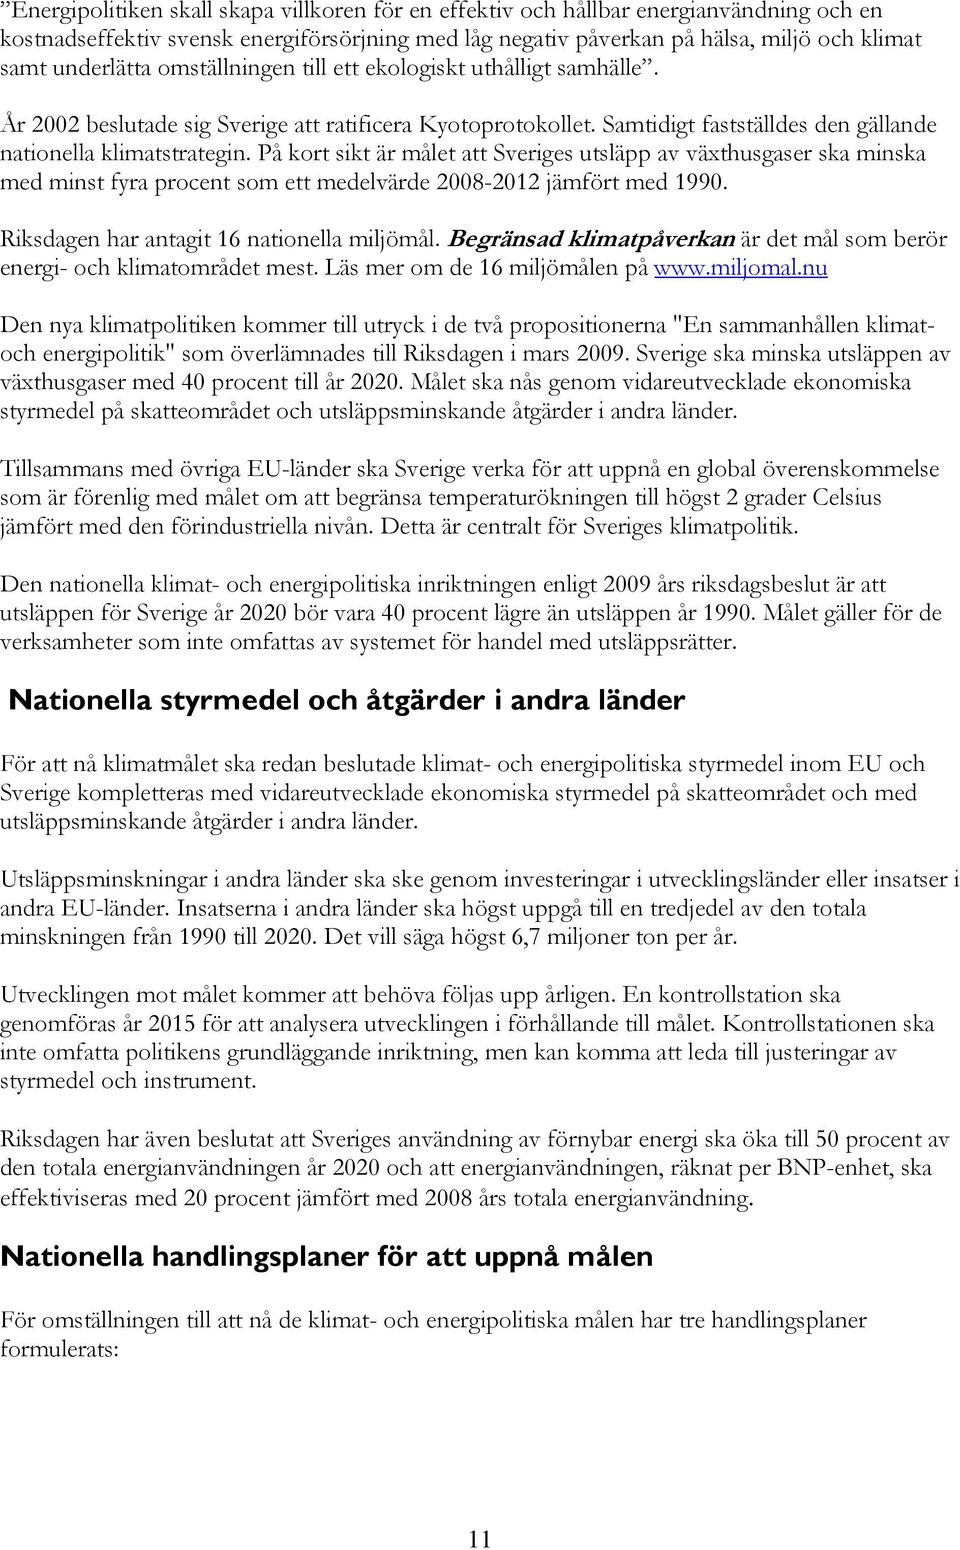 På kort sikt är målet att Sveriges utsläpp av växthusgaser ska minska med minst fyra procent som ett medelvärde 2008-2012 jämfört med 1990. Riksdagen har antagit 16 nationella miljömål.